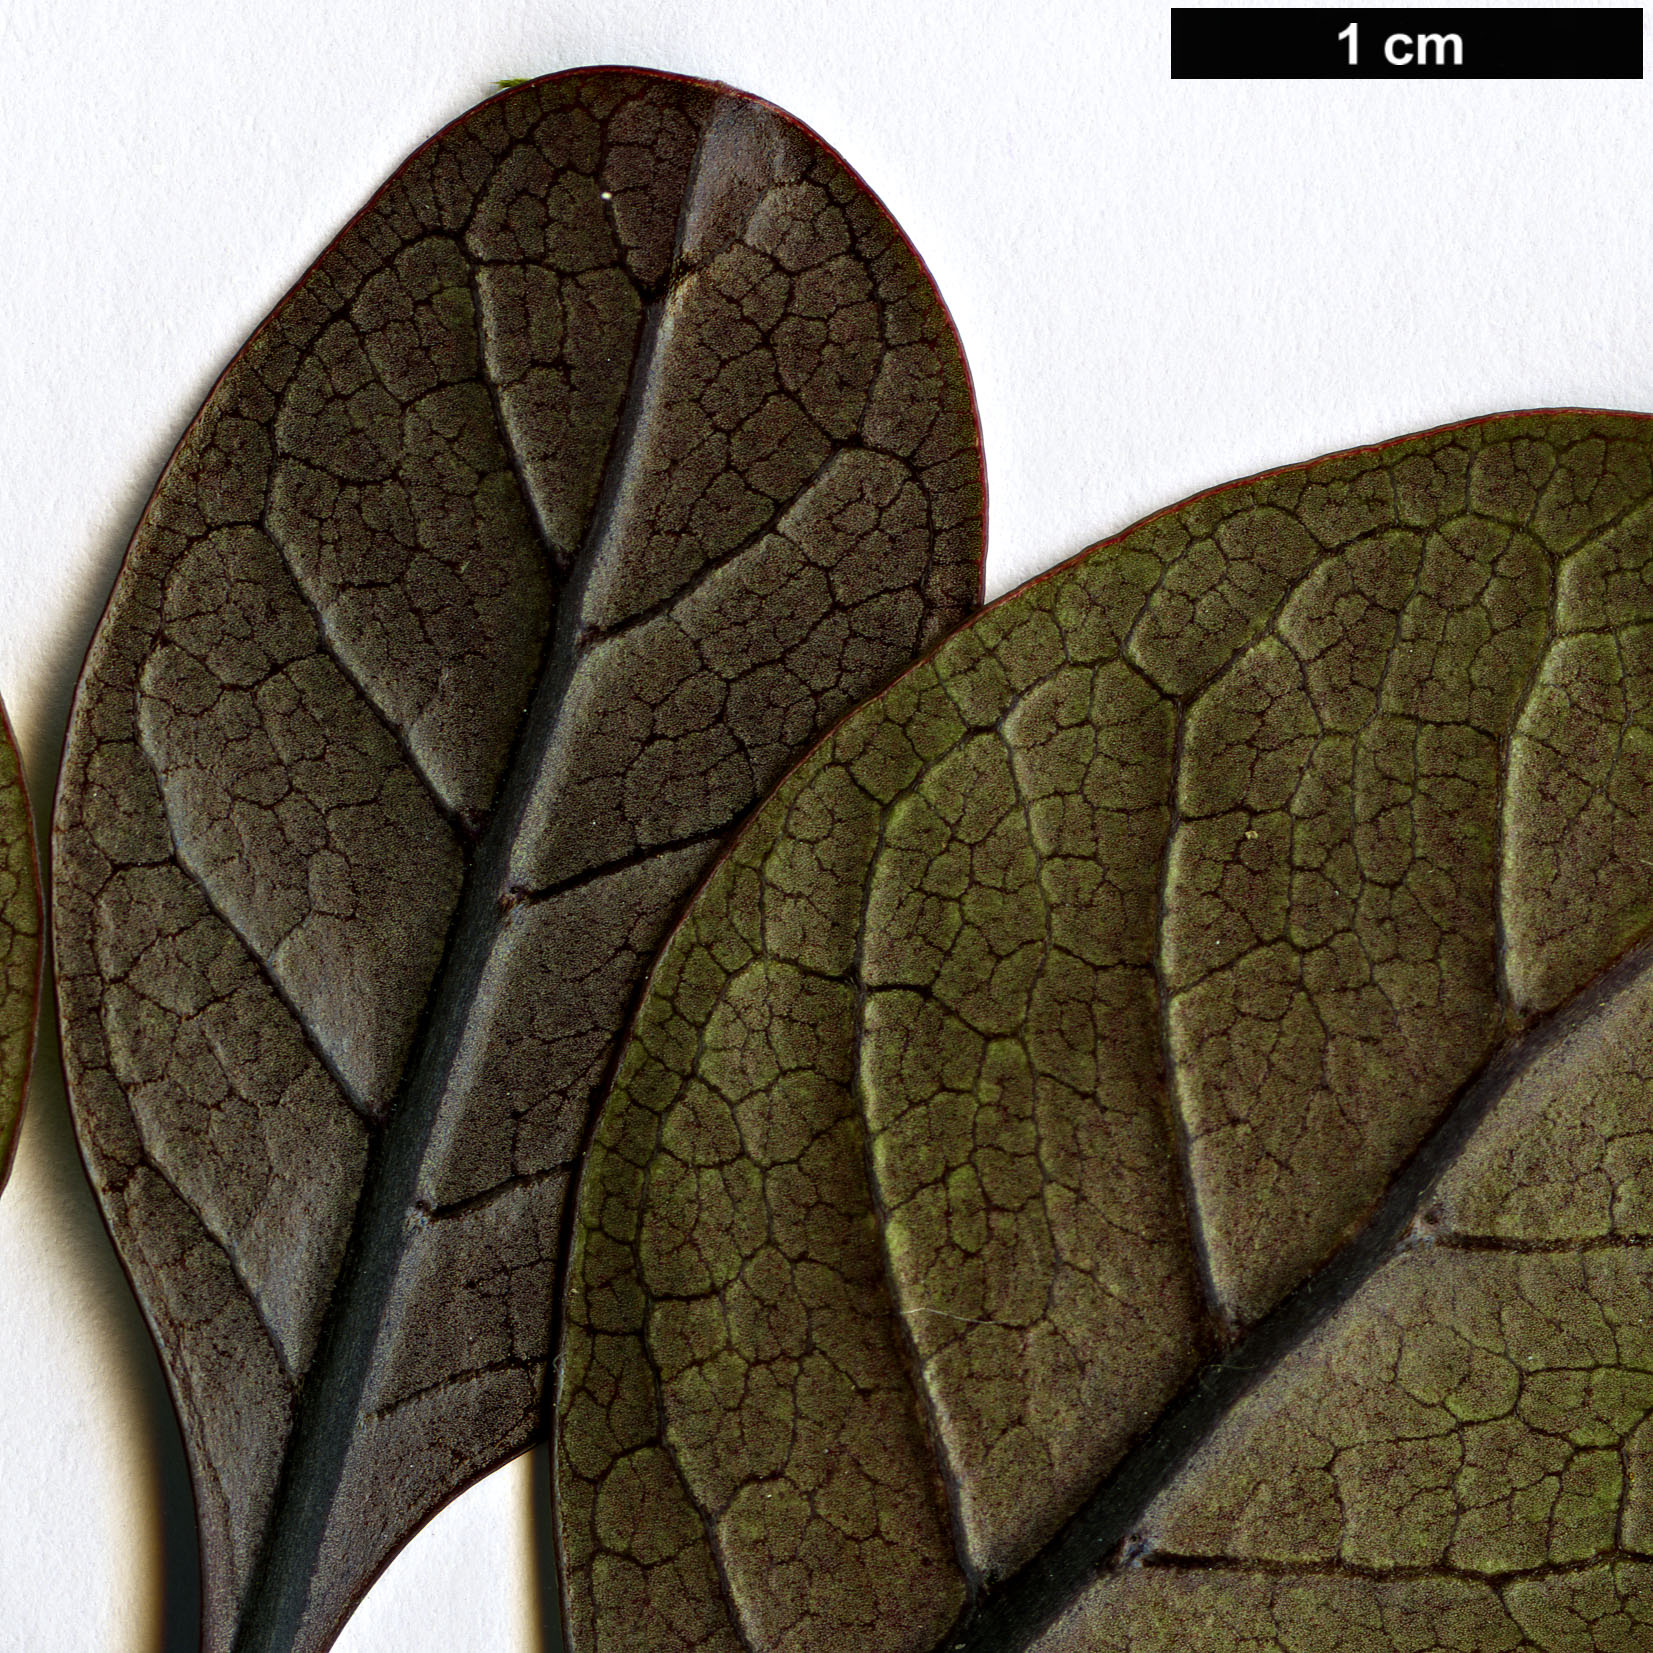 High resolution image: Family: Rubiaceae - Genus: Coprosma - Taxon: arborea - SpeciesSub: 'Purpurea'